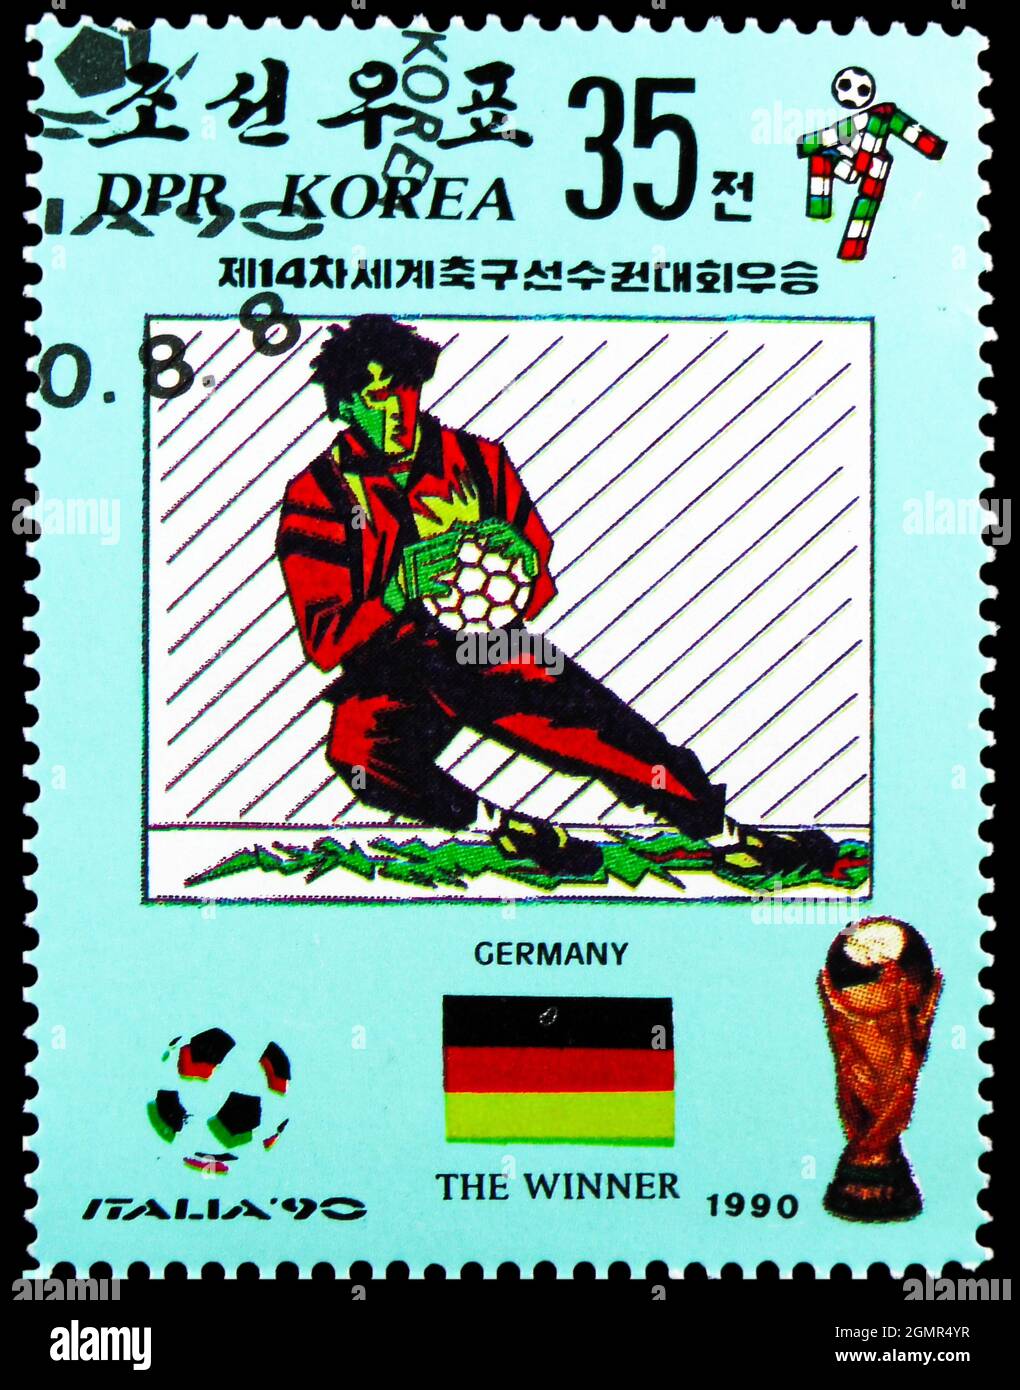 MOSKAU, RUSSLAND - 31. JULI 2021: In Korea gedruckte Briefmarke zeigt Torwart, FIFA World Cup 1990 - Italien Serie, um 1990 Stockfoto